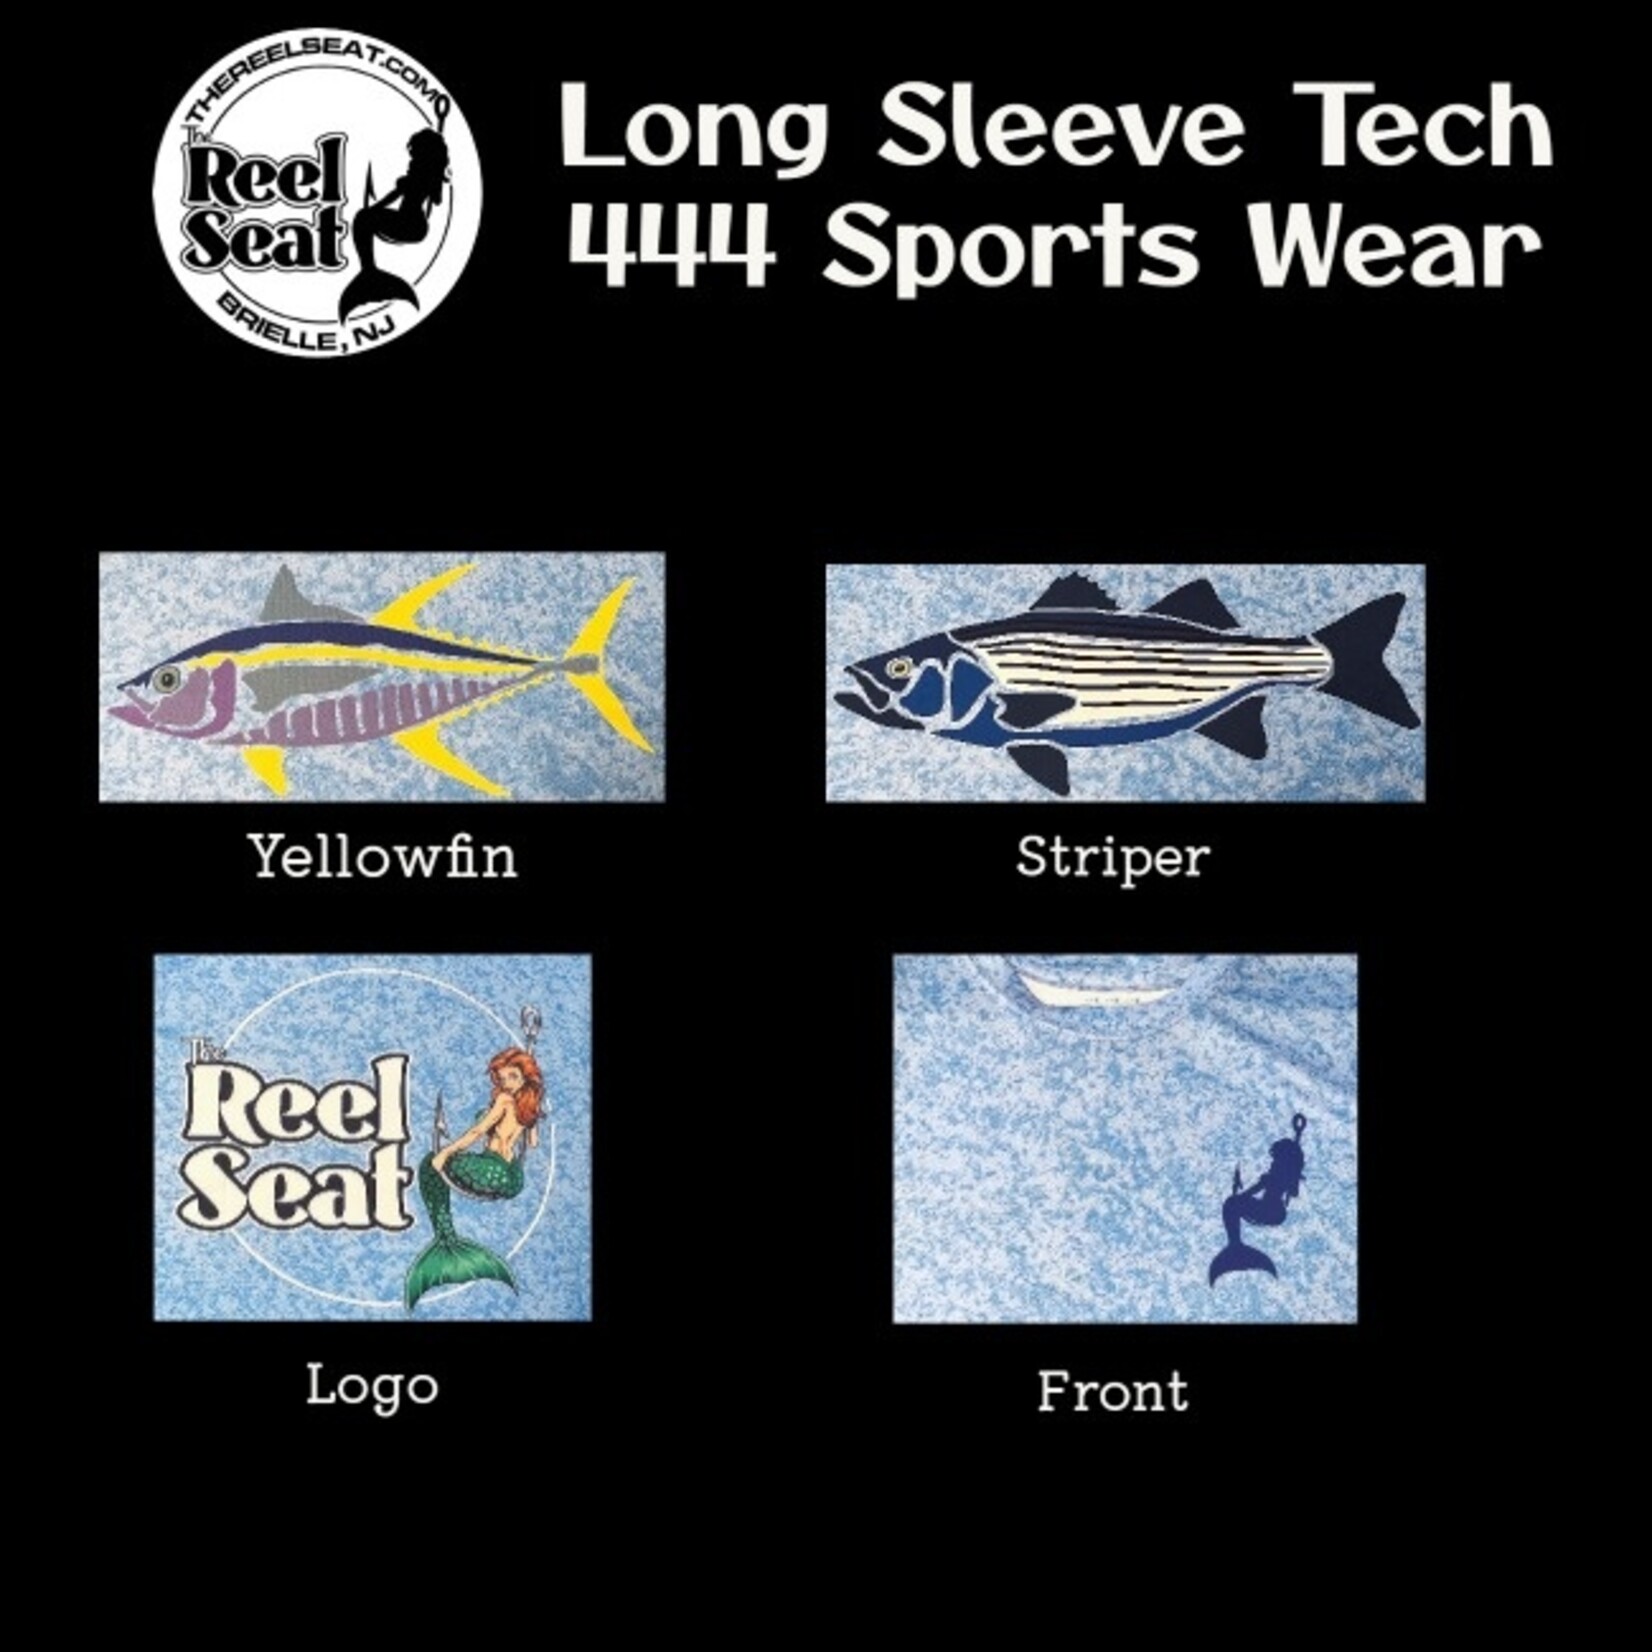 RS Long Sleeve Tech 444 Sports Wear